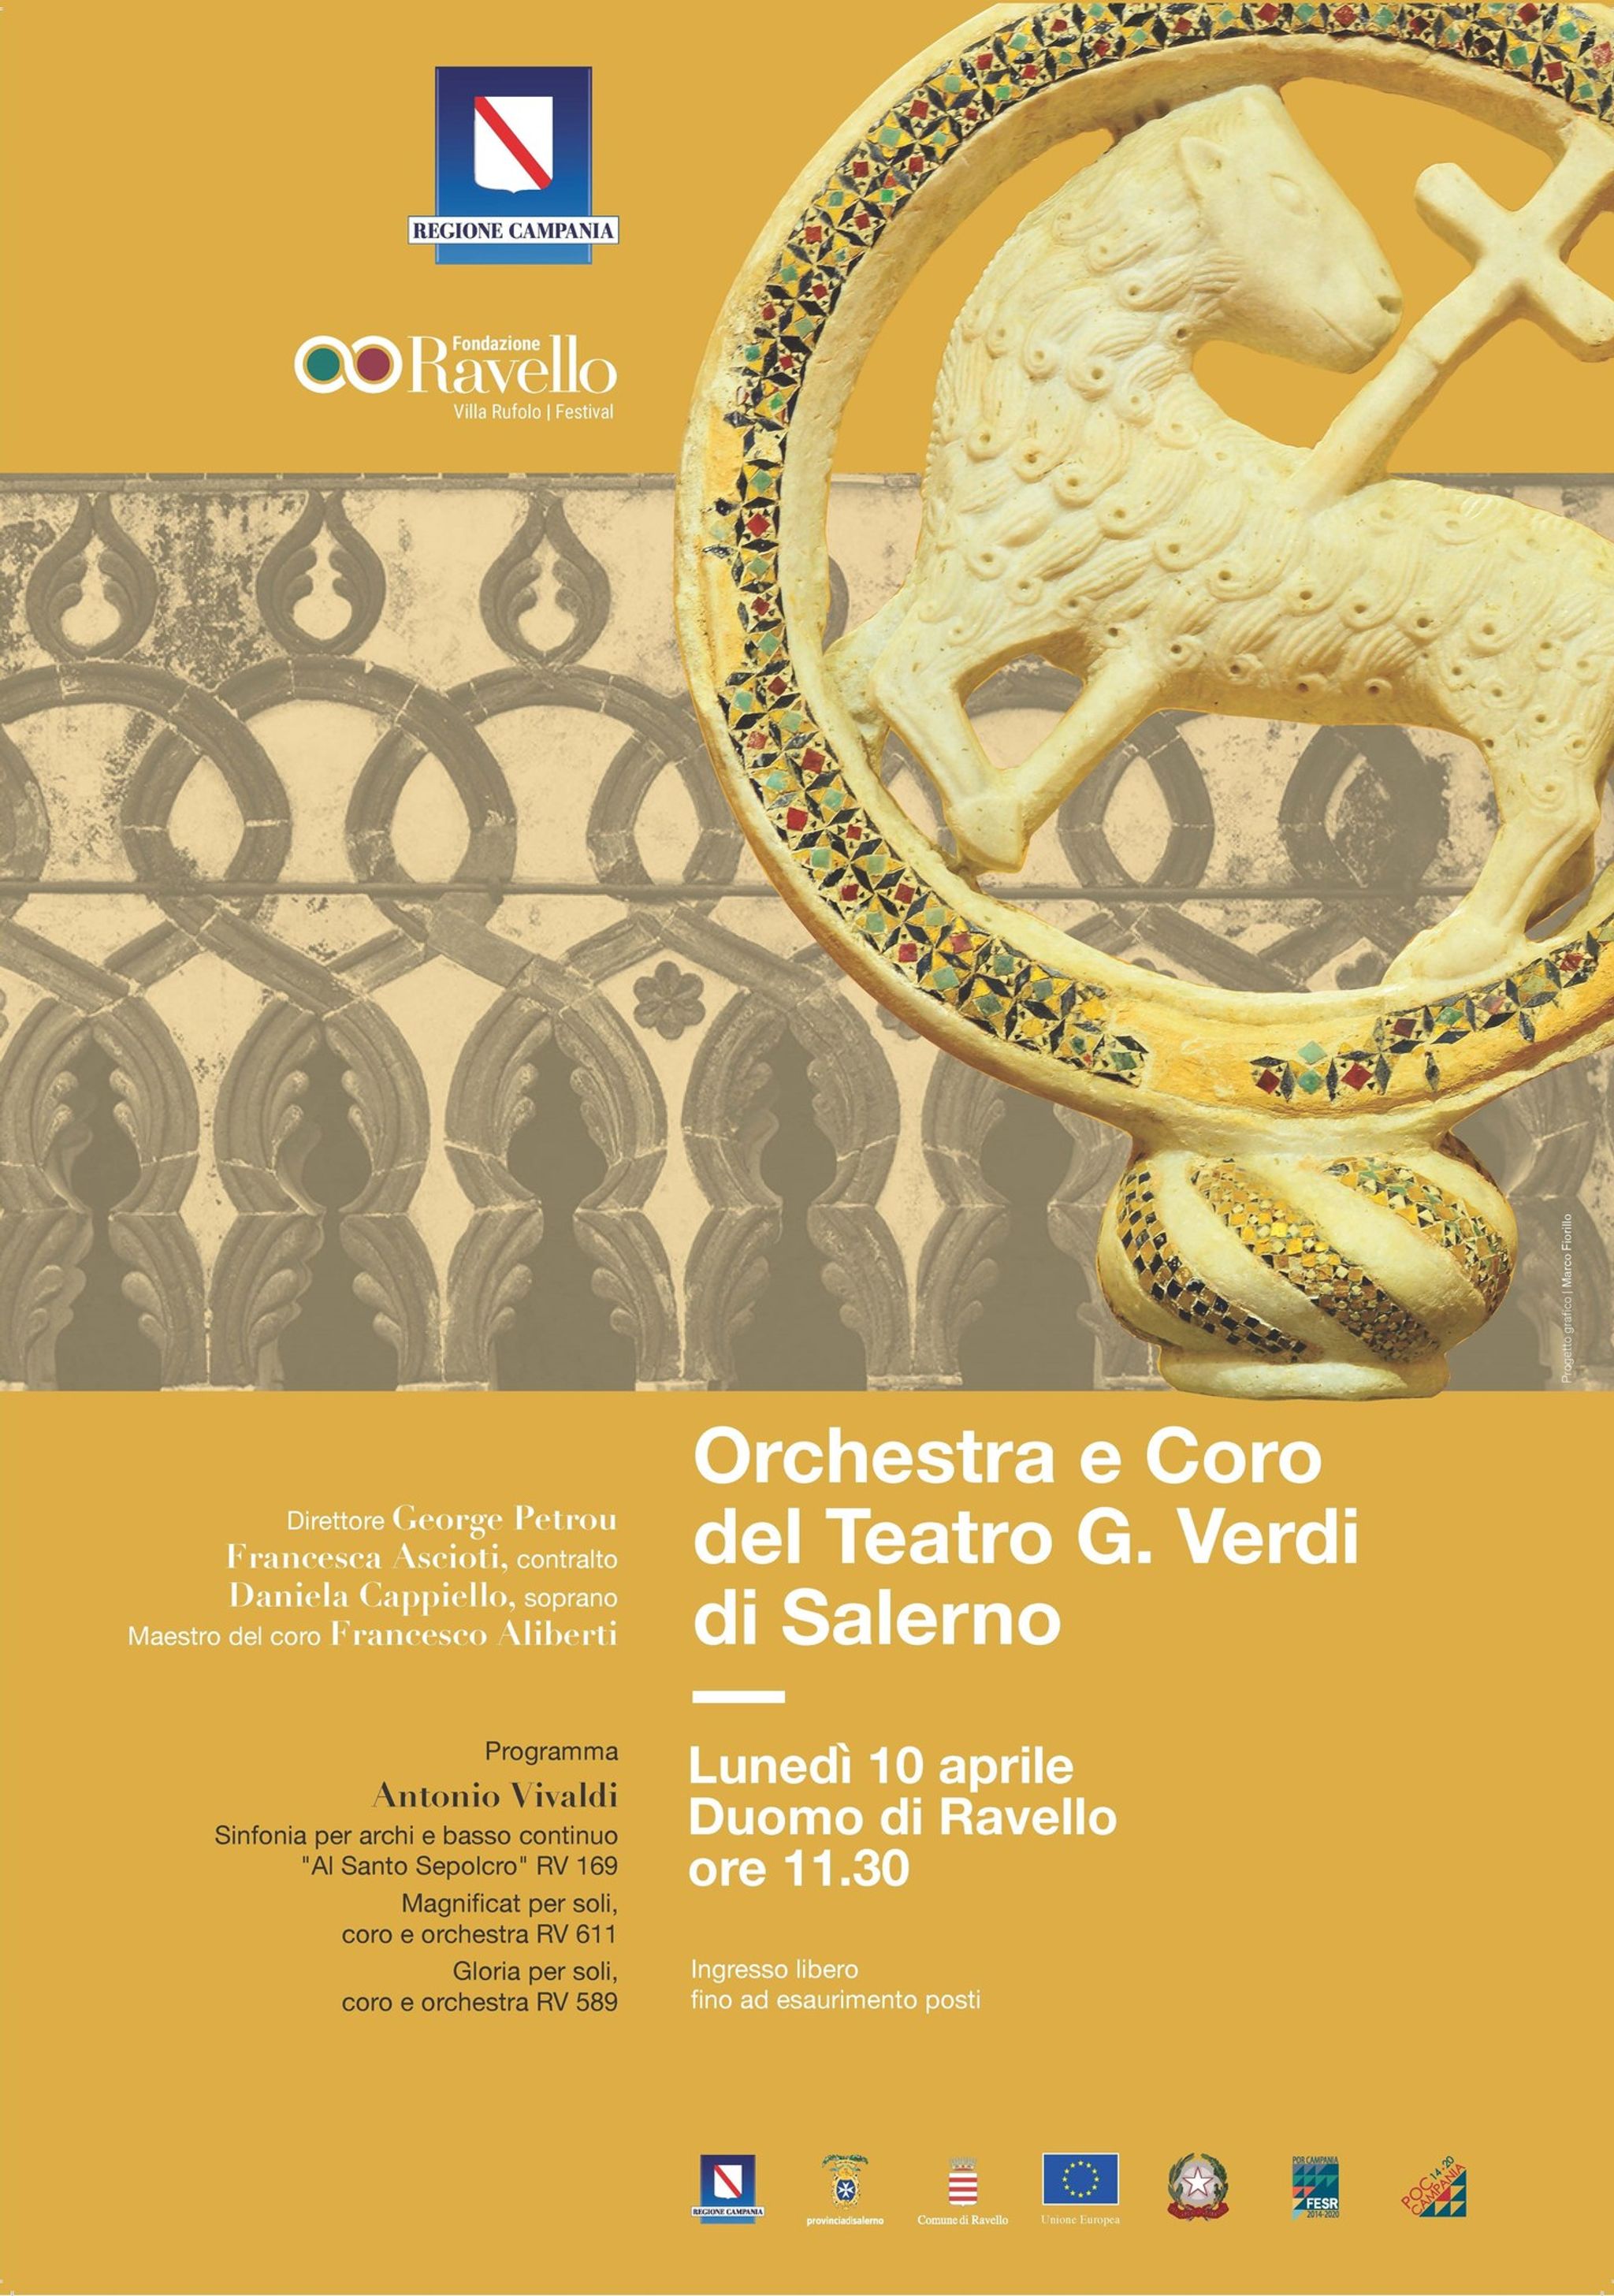 Orchestra e Coro del Teatro G. Verdi di Salerno